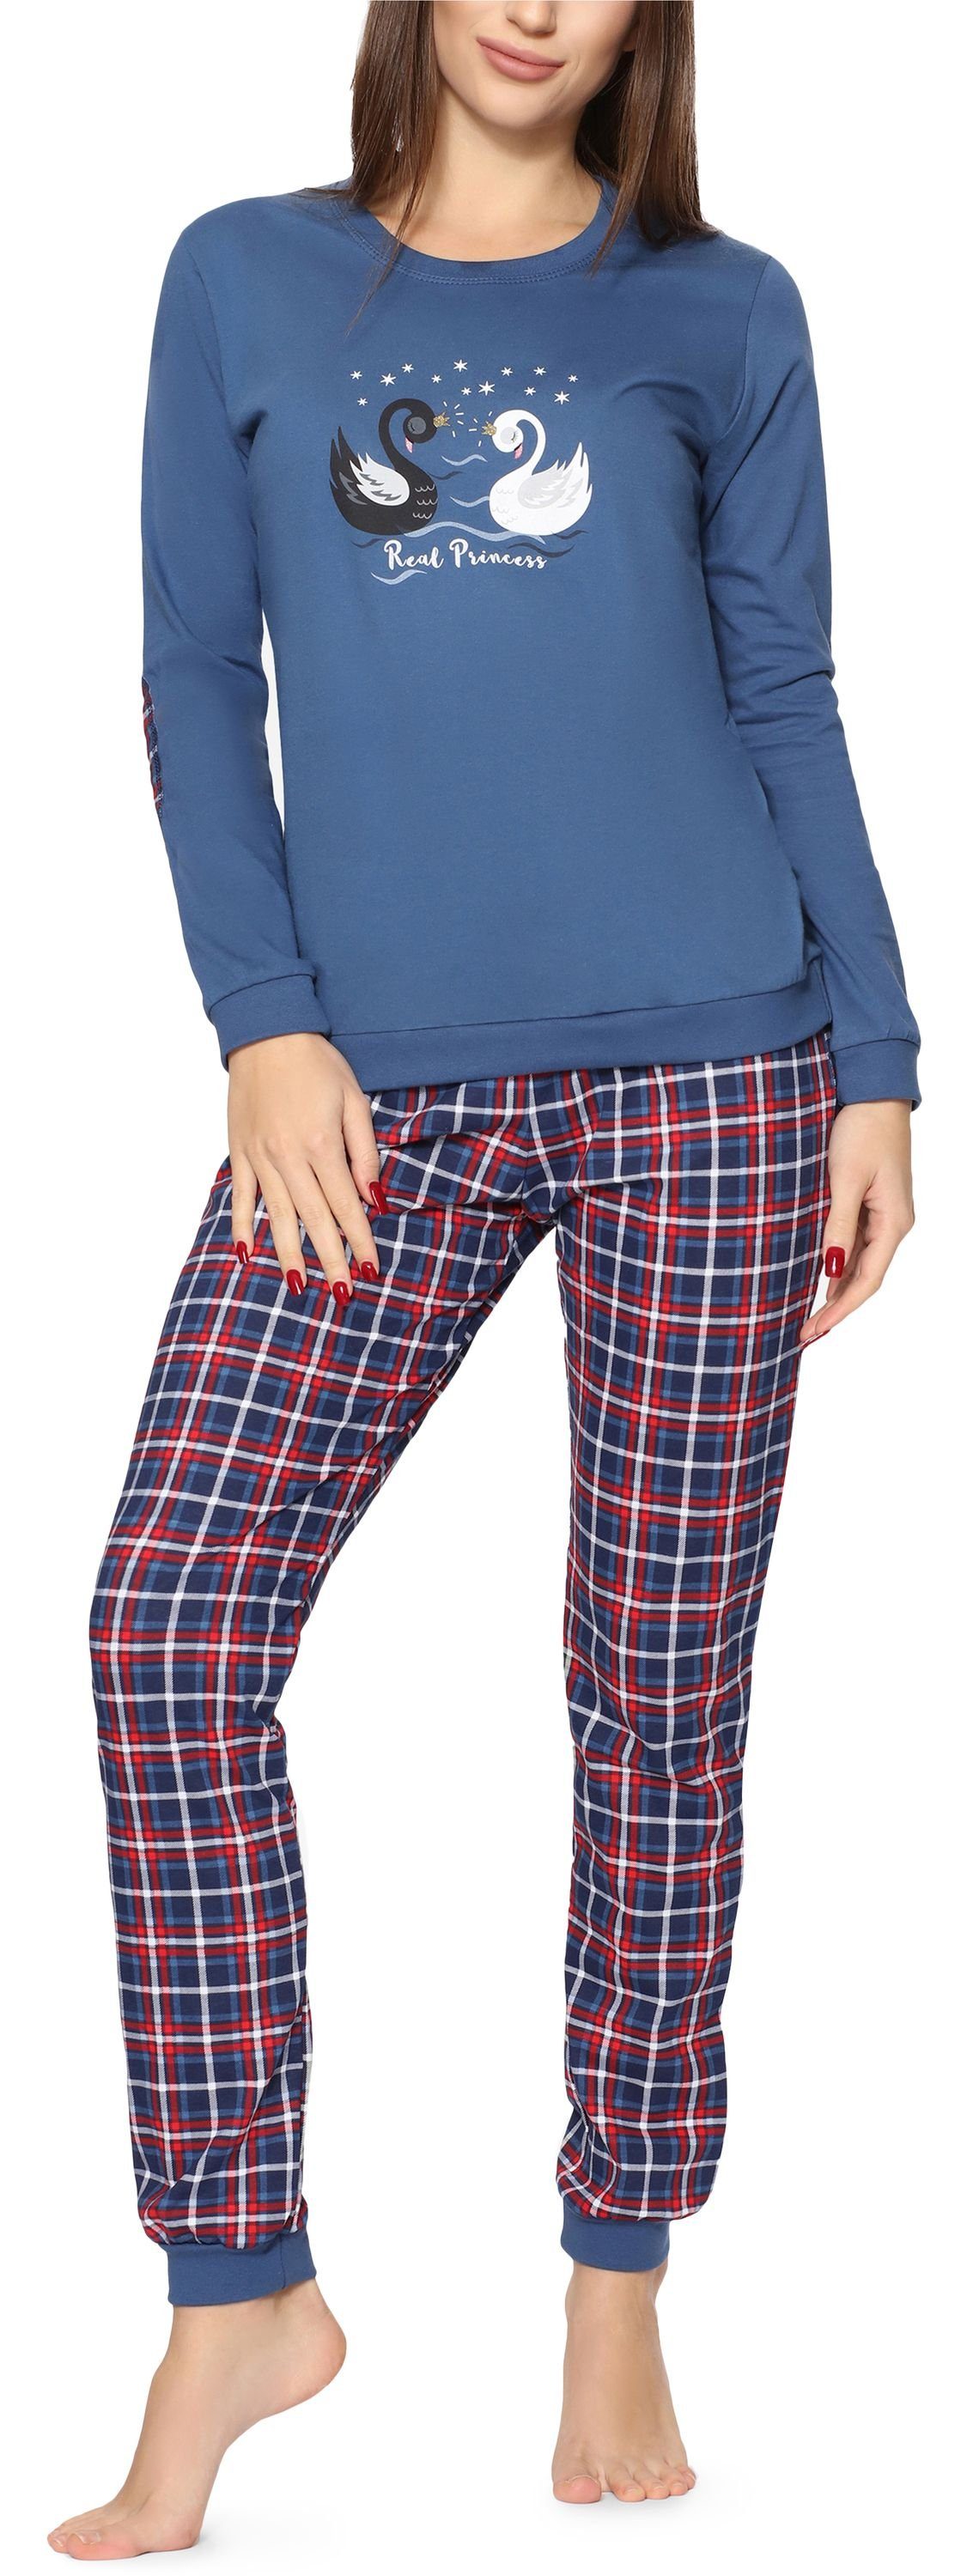 mit 634 Rundhals Zweiteiler (Swan) Jeans Damen Baumwolle Cornette Pyjama Schlafanzug Schlafanzug Langarm